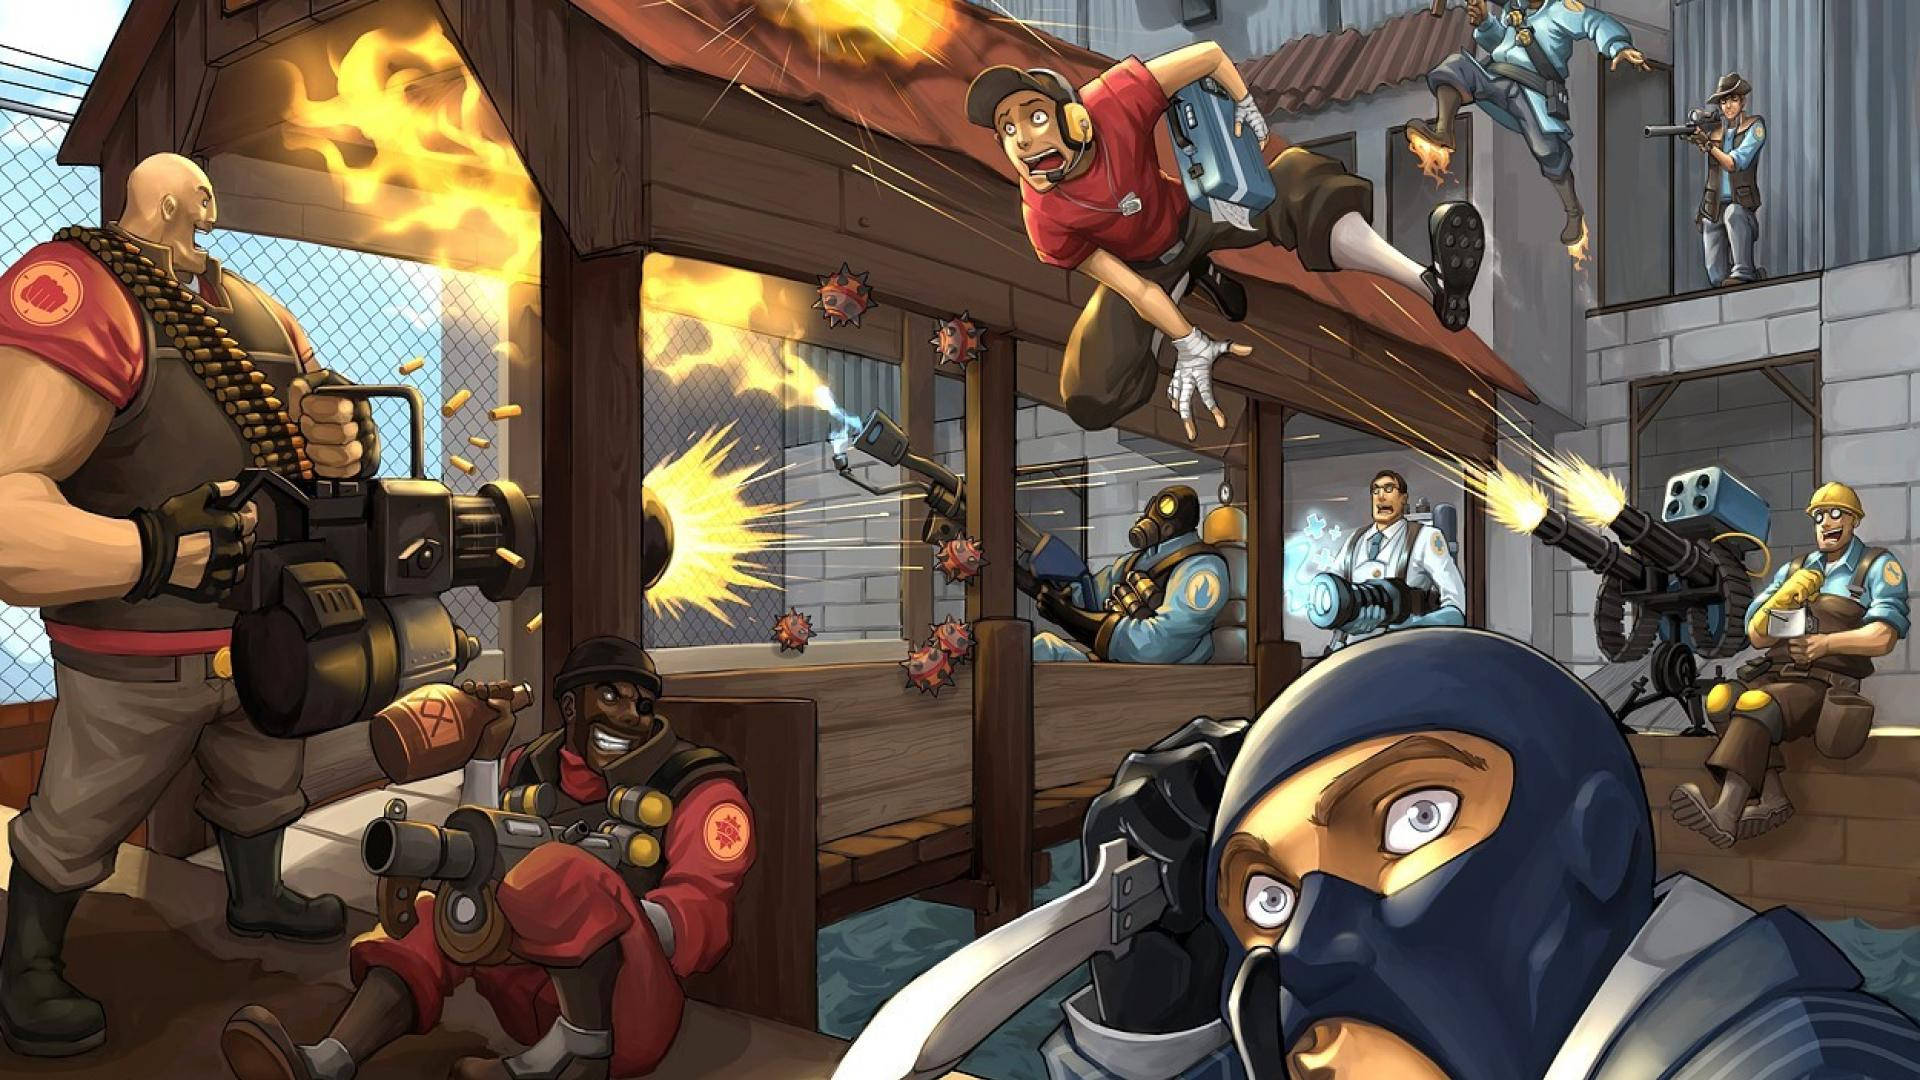 Team Fortress 2 Battle Artwork Wallpaper